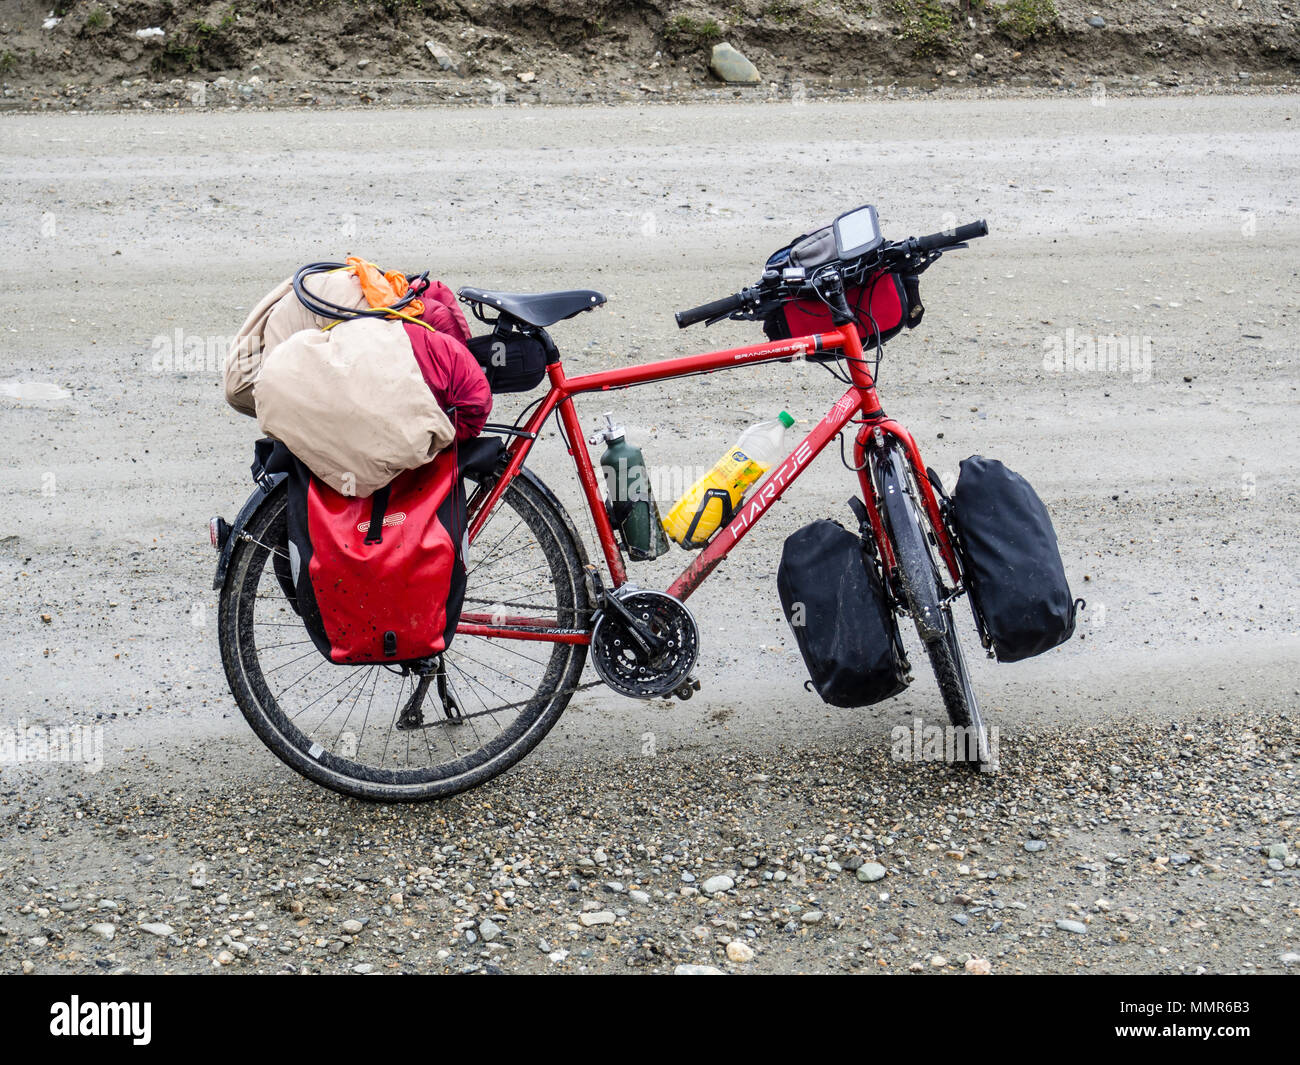 Vélo sur route près d'Ushuaia, montagnes couvertes de neige, gravier, Patagonie, Ushuaia, Argentine Banque D'Images